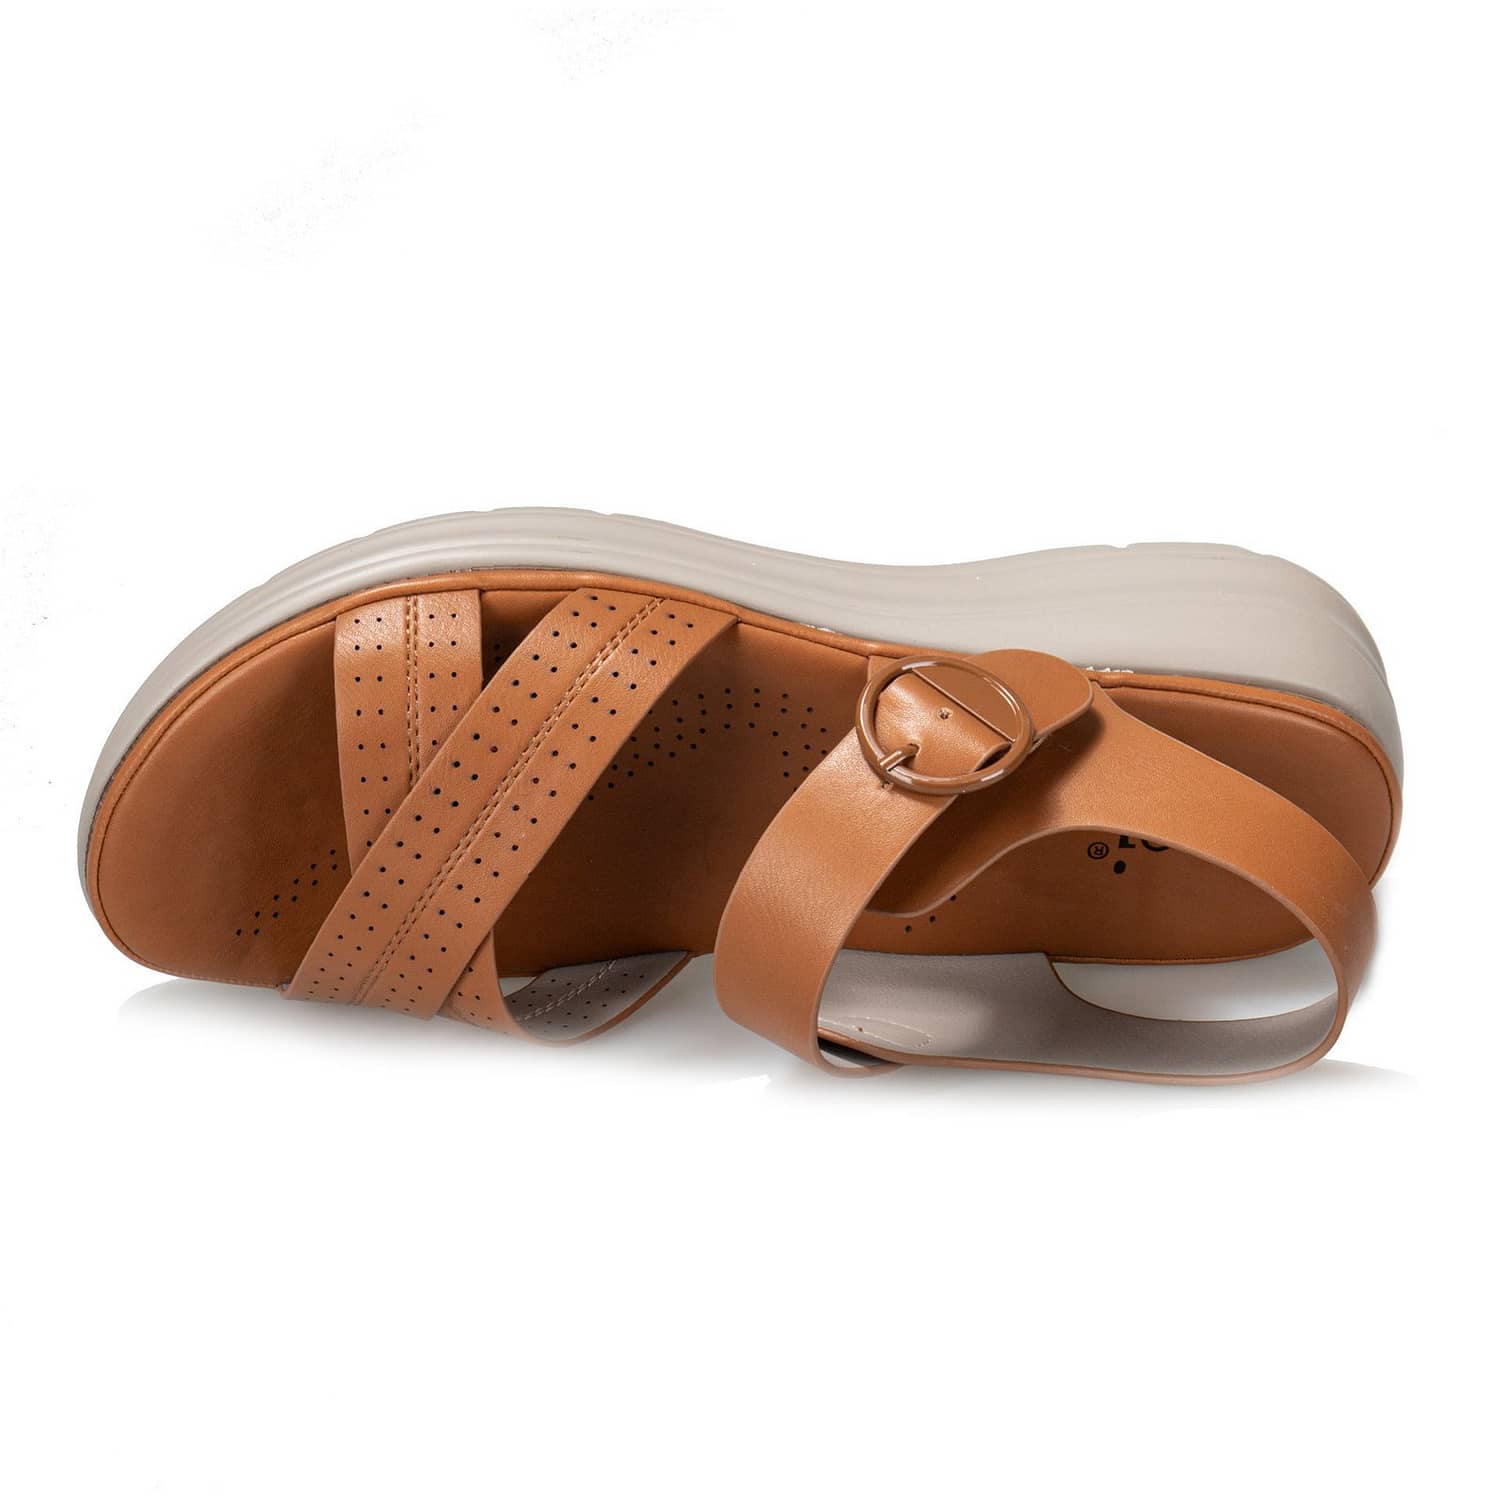 Sandales Confortables à talons hauts - DartyShoes